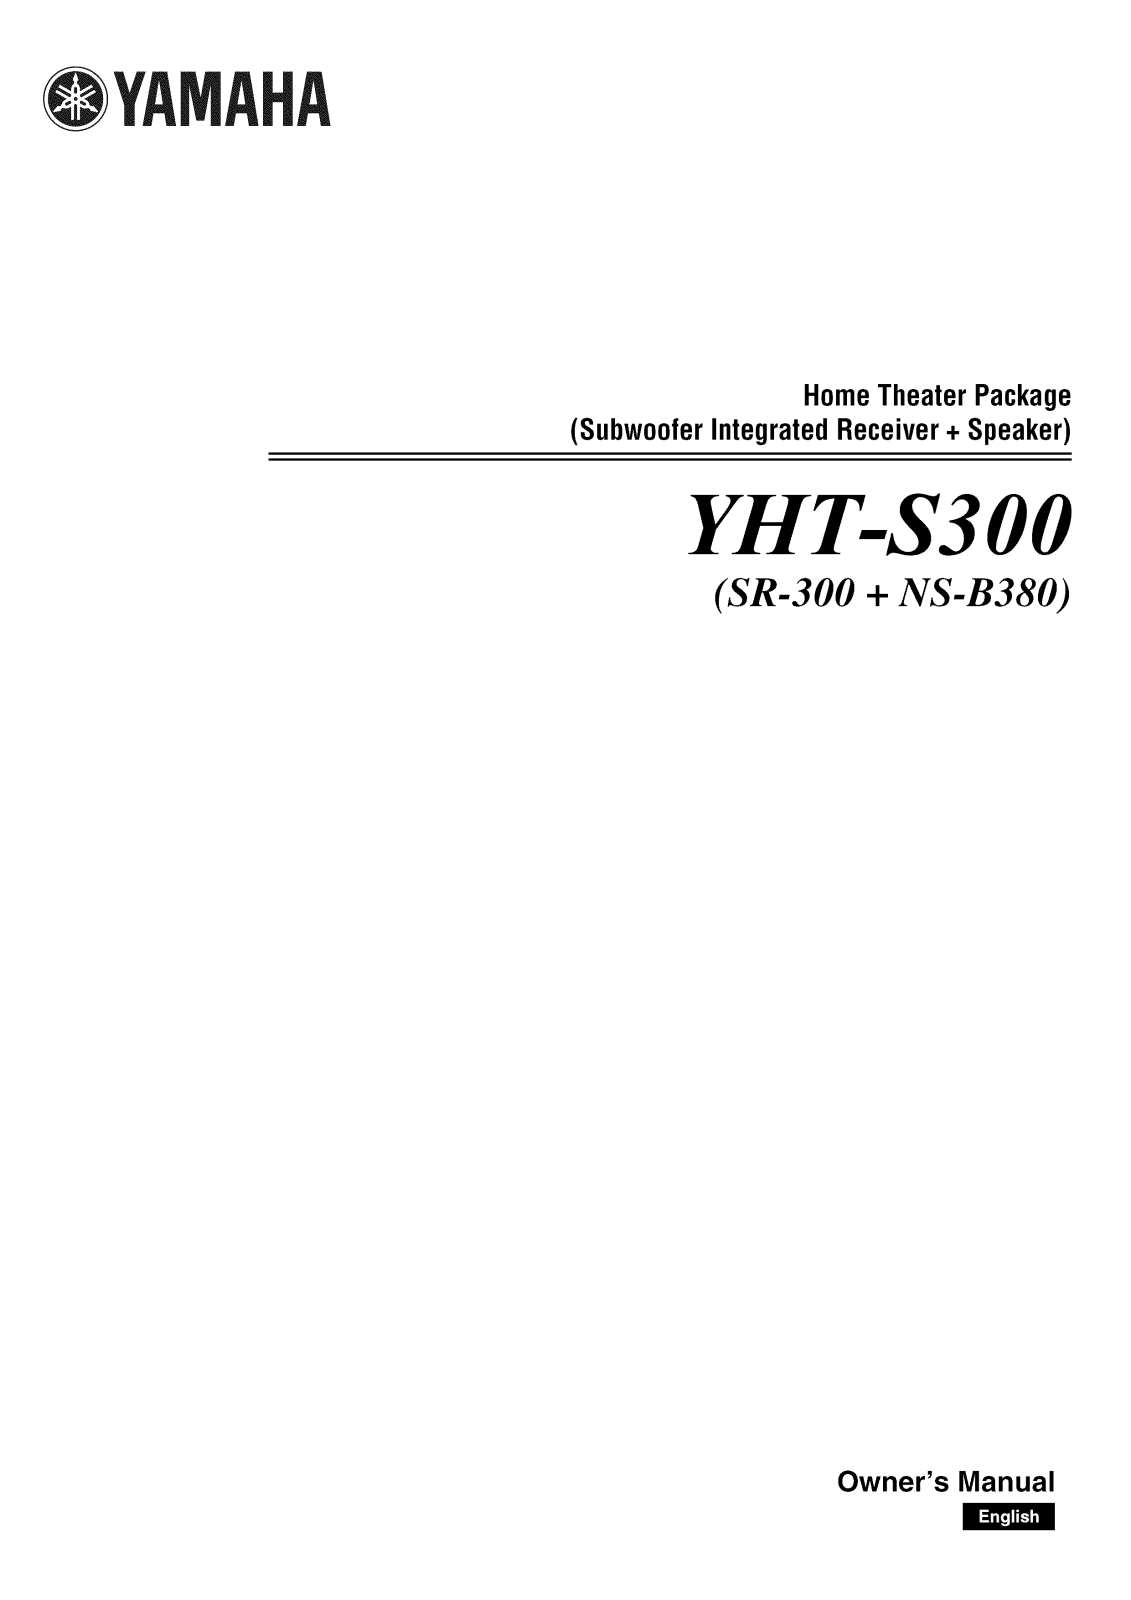 Yamaha SR-300, NS-B380 Owner’s Manual